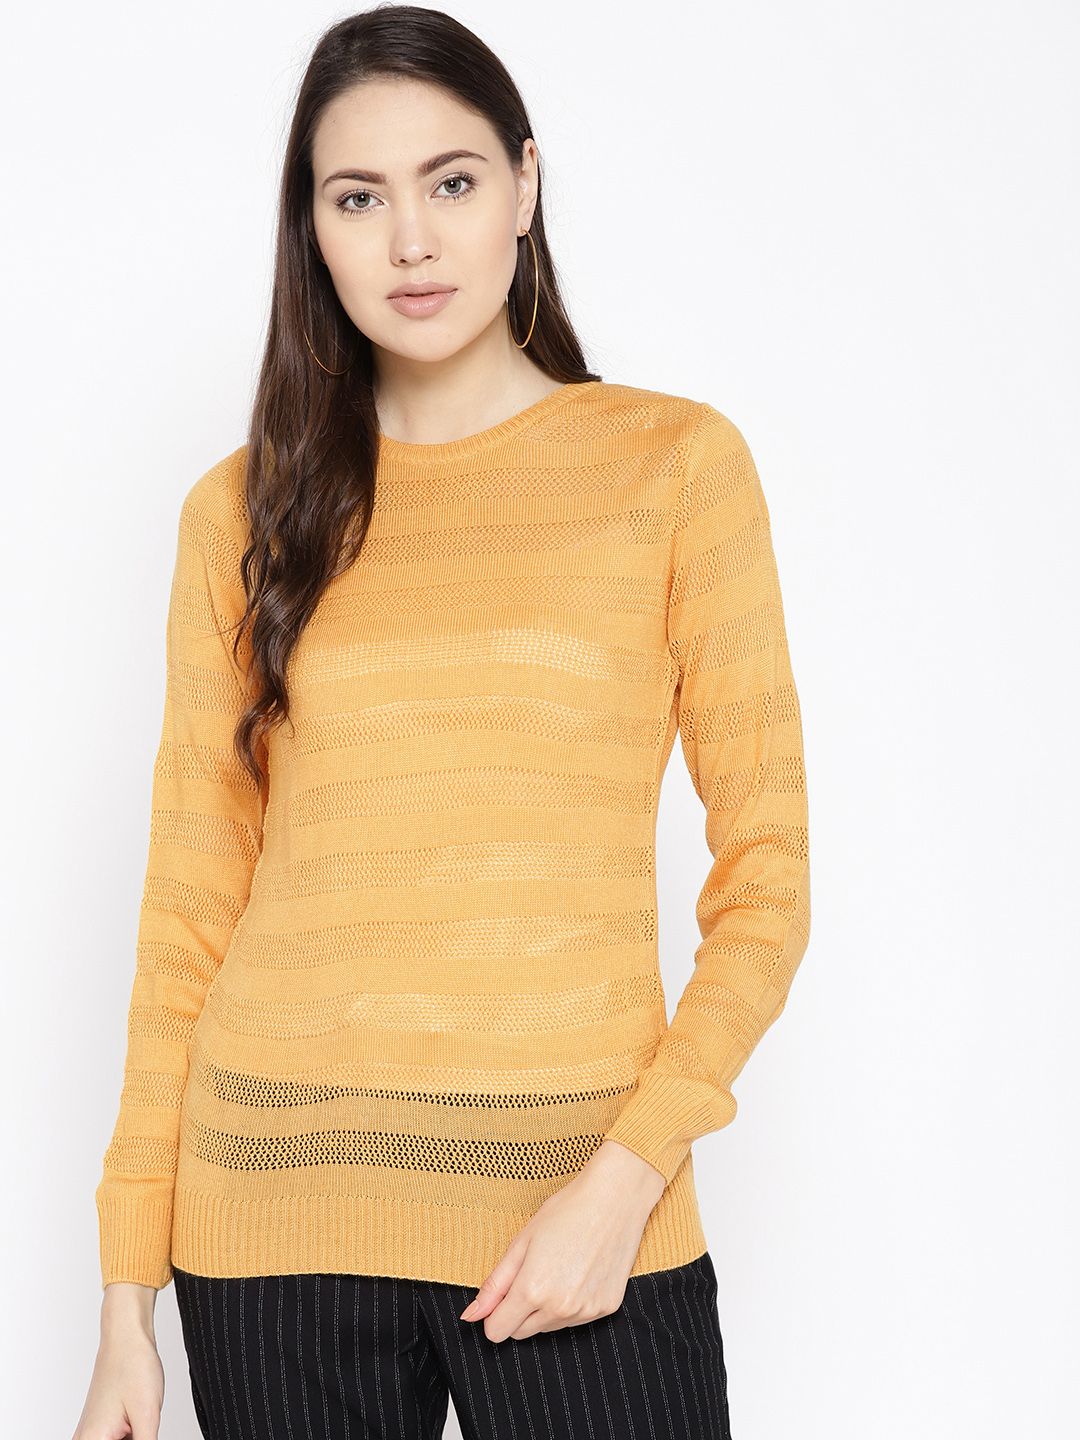 Cayman Women Mustard Yellow Self Striped Sweater Price in India